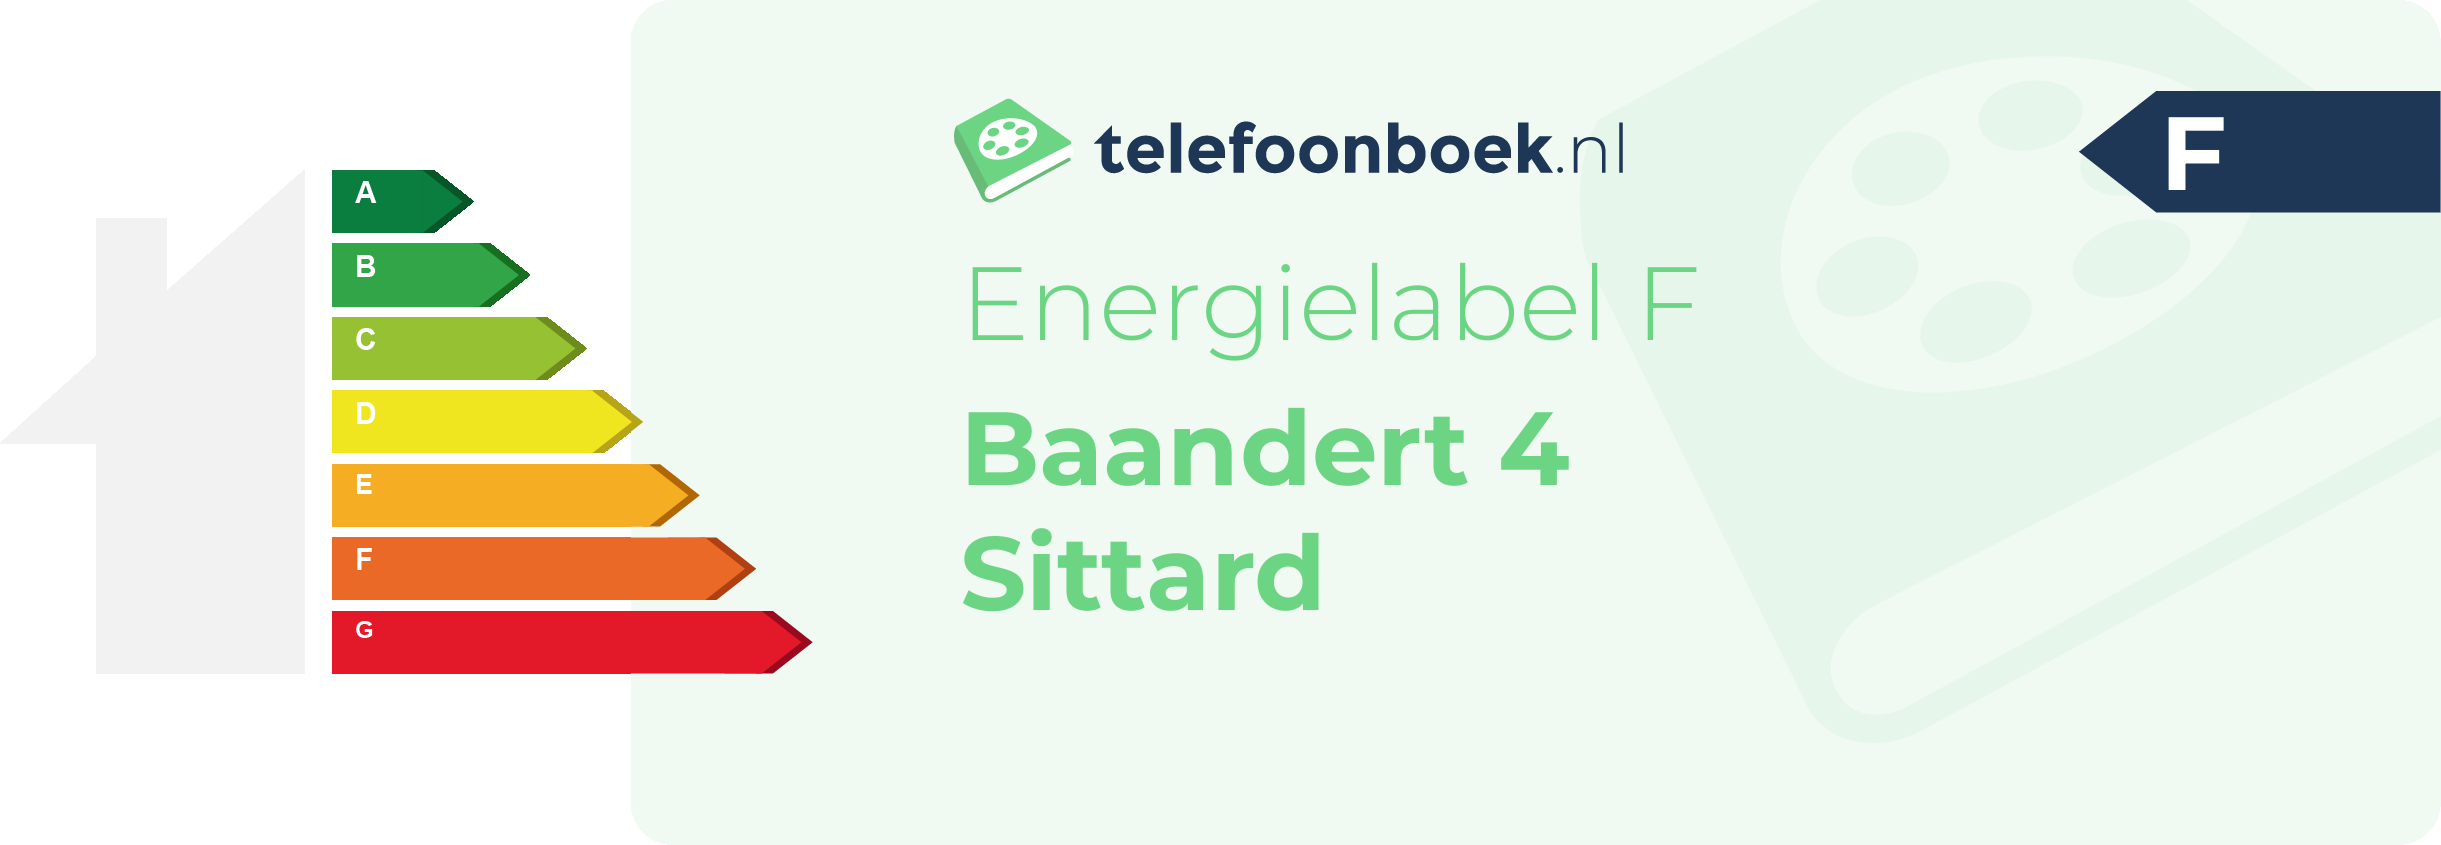 Energielabel Baandert 4 Sittard